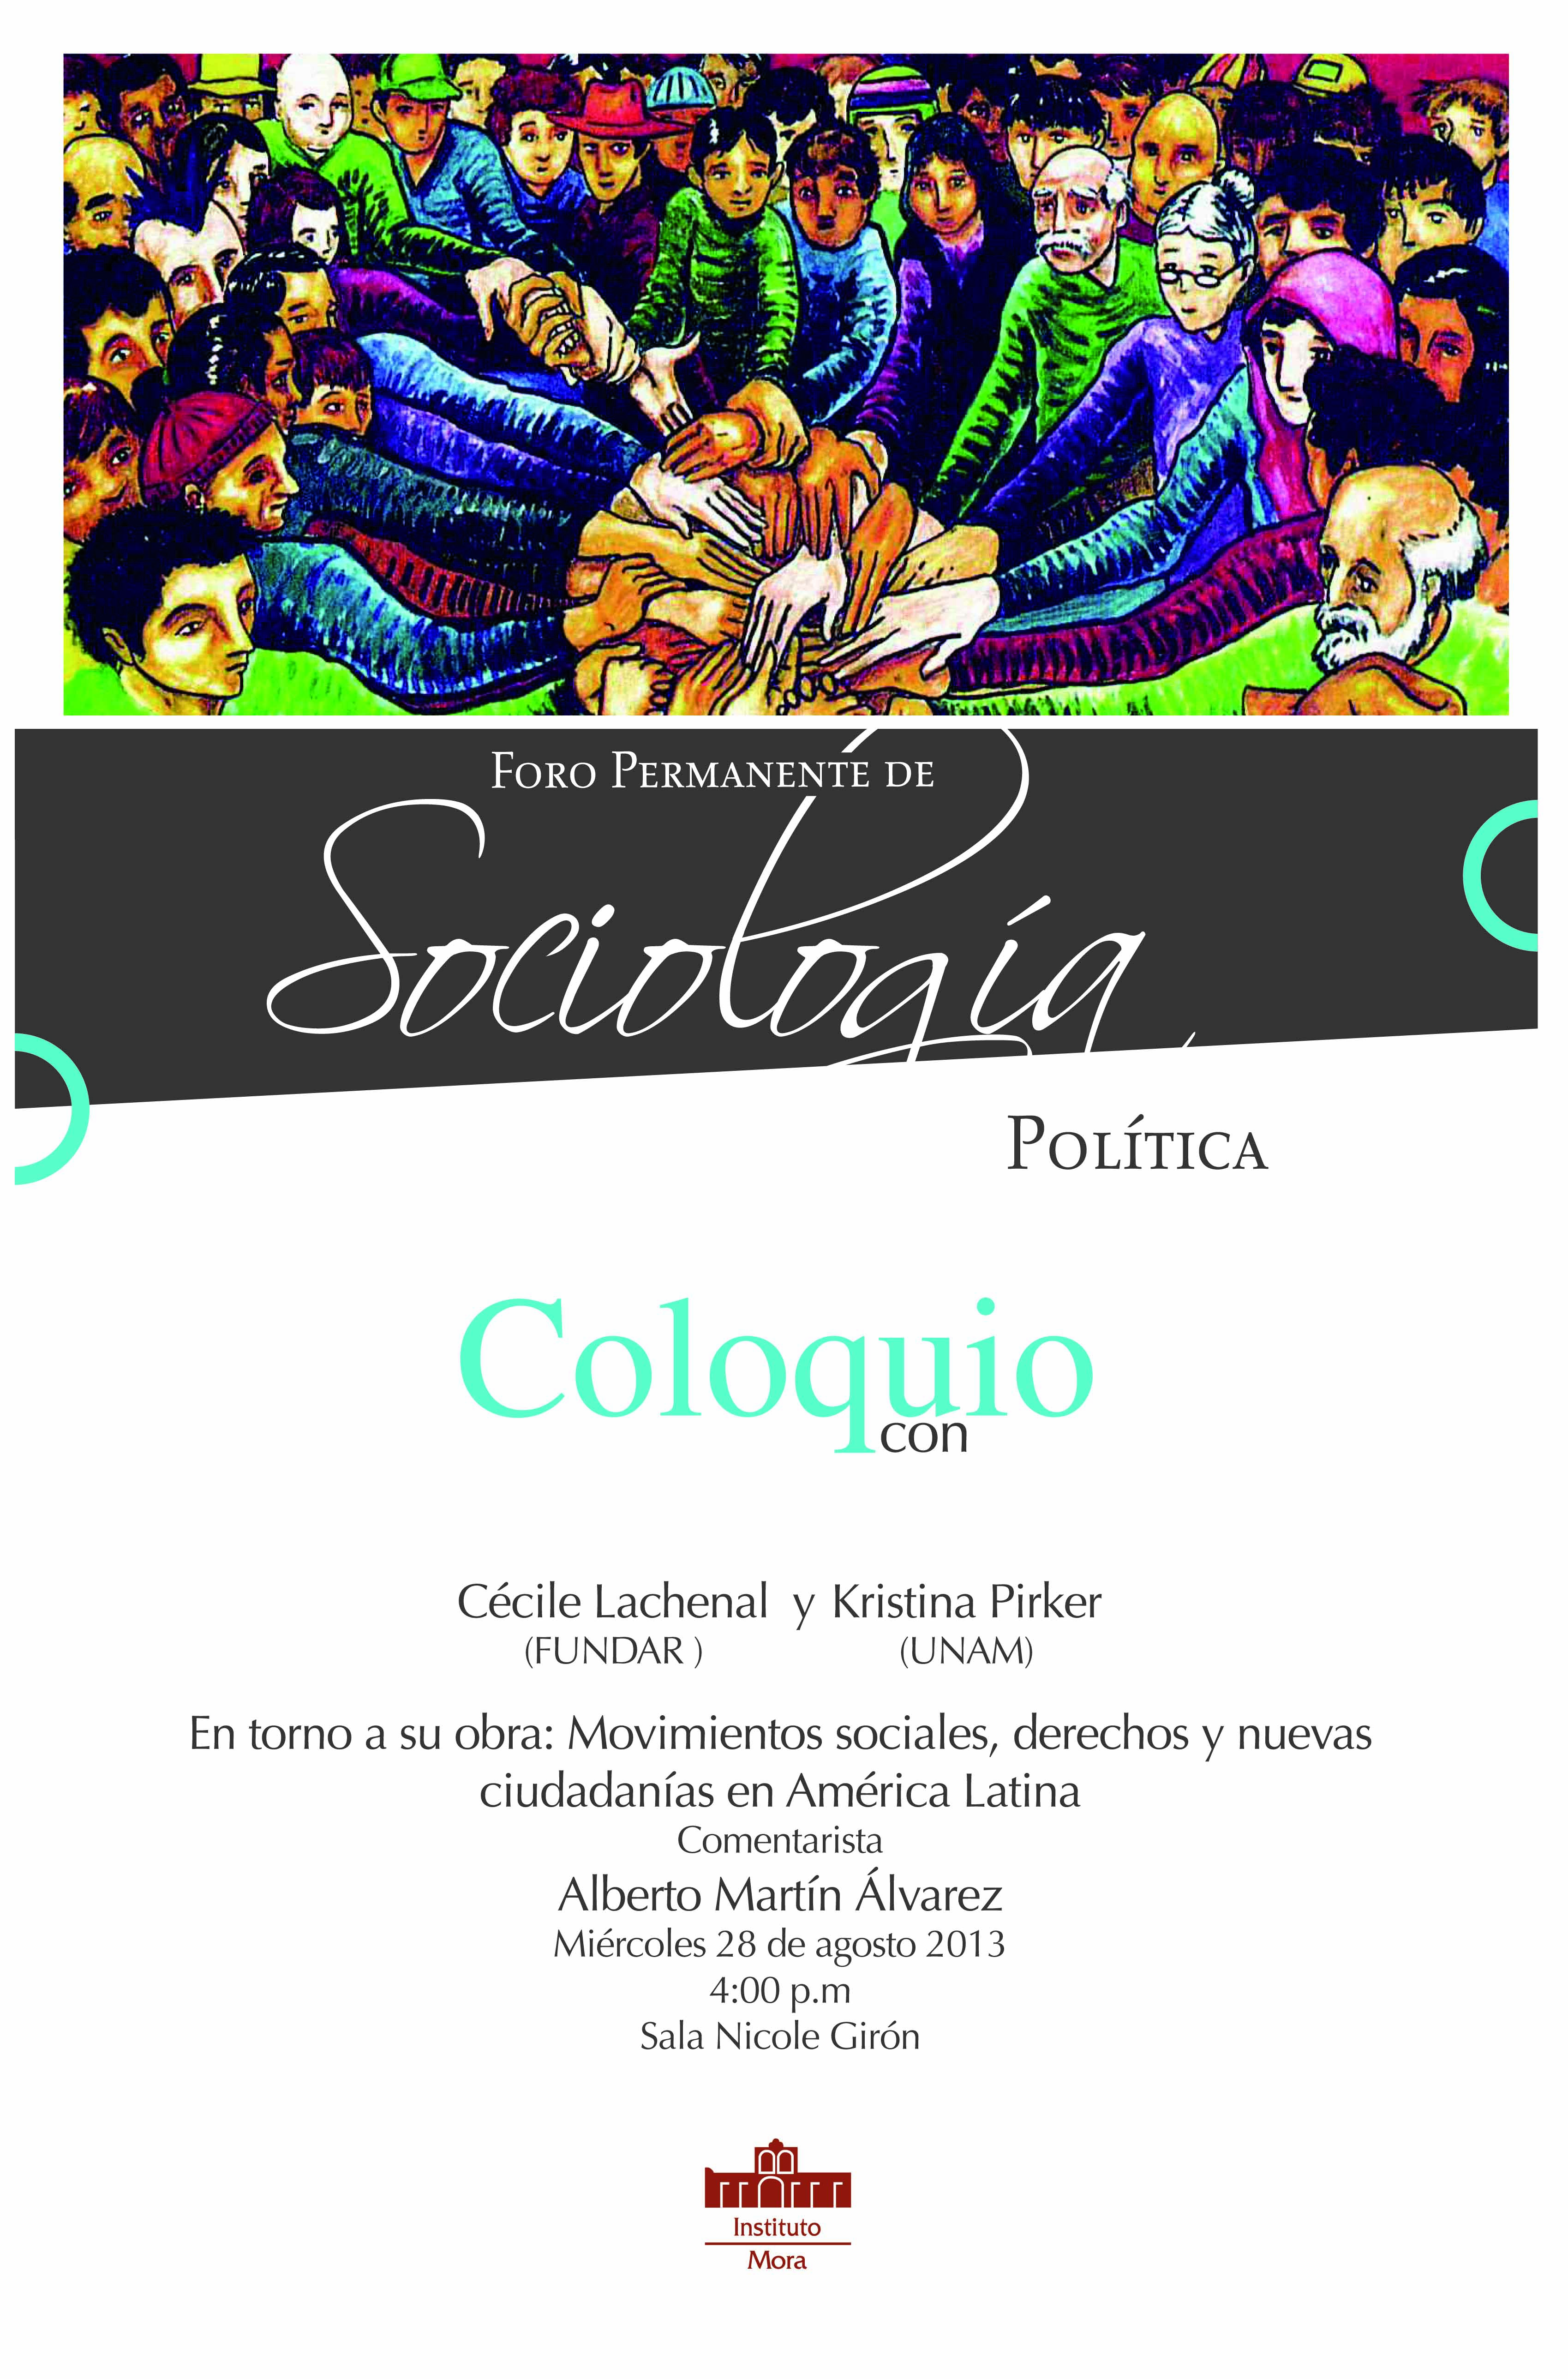 Coloquio, en torno a la obra "Movimientos sociales, derechos y nuevas ciudadanías en América Latina, de Cécile Lachenal y Kristina Pirker.